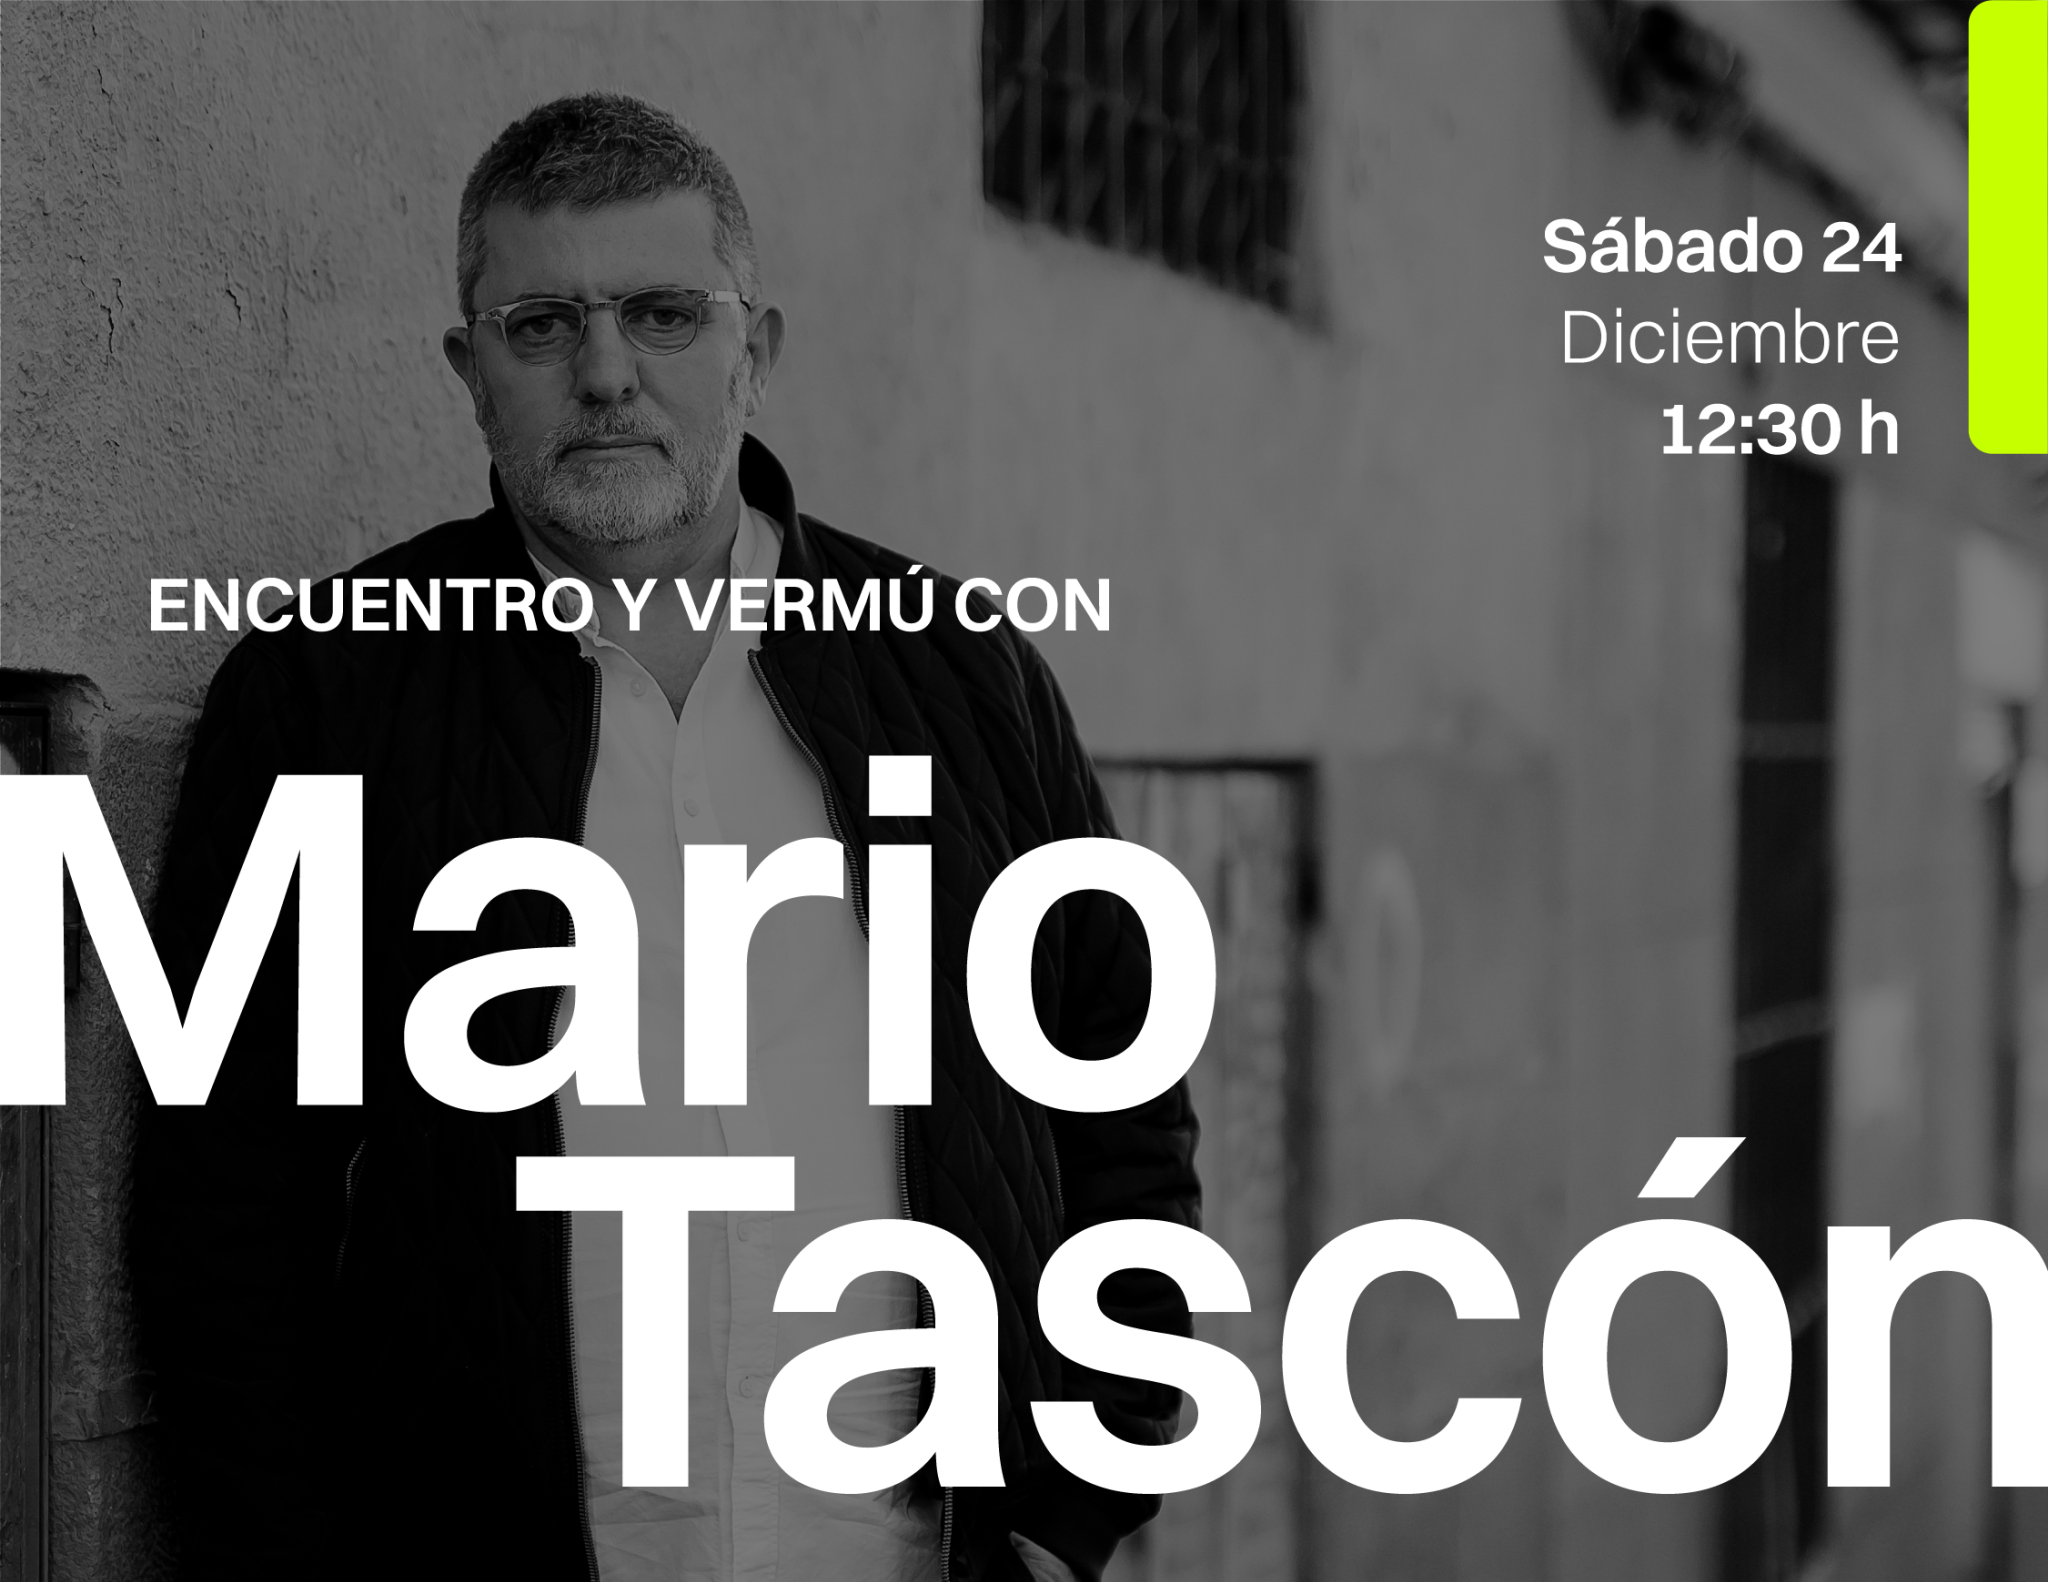 Encuentro abierto y vermú con Mario Tascón para hablar sobre libros únicos y curiosos 1